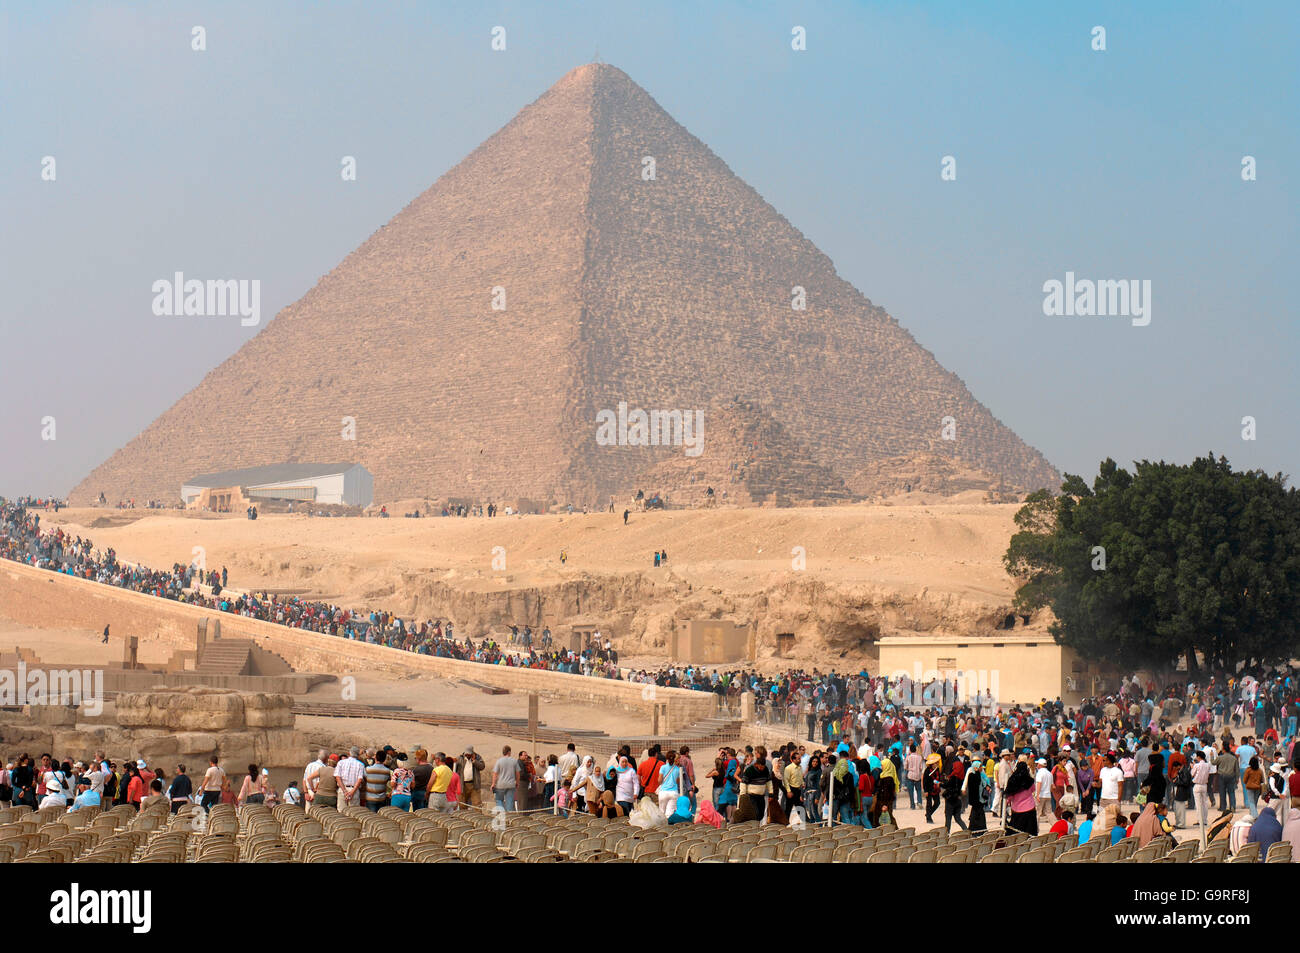 Die große Pyramide von Giza, Sonnenbarke, Touristen, Pyramiden von Giza, Gizeh, Ägypten / Pyramide des Cheops Stockfoto